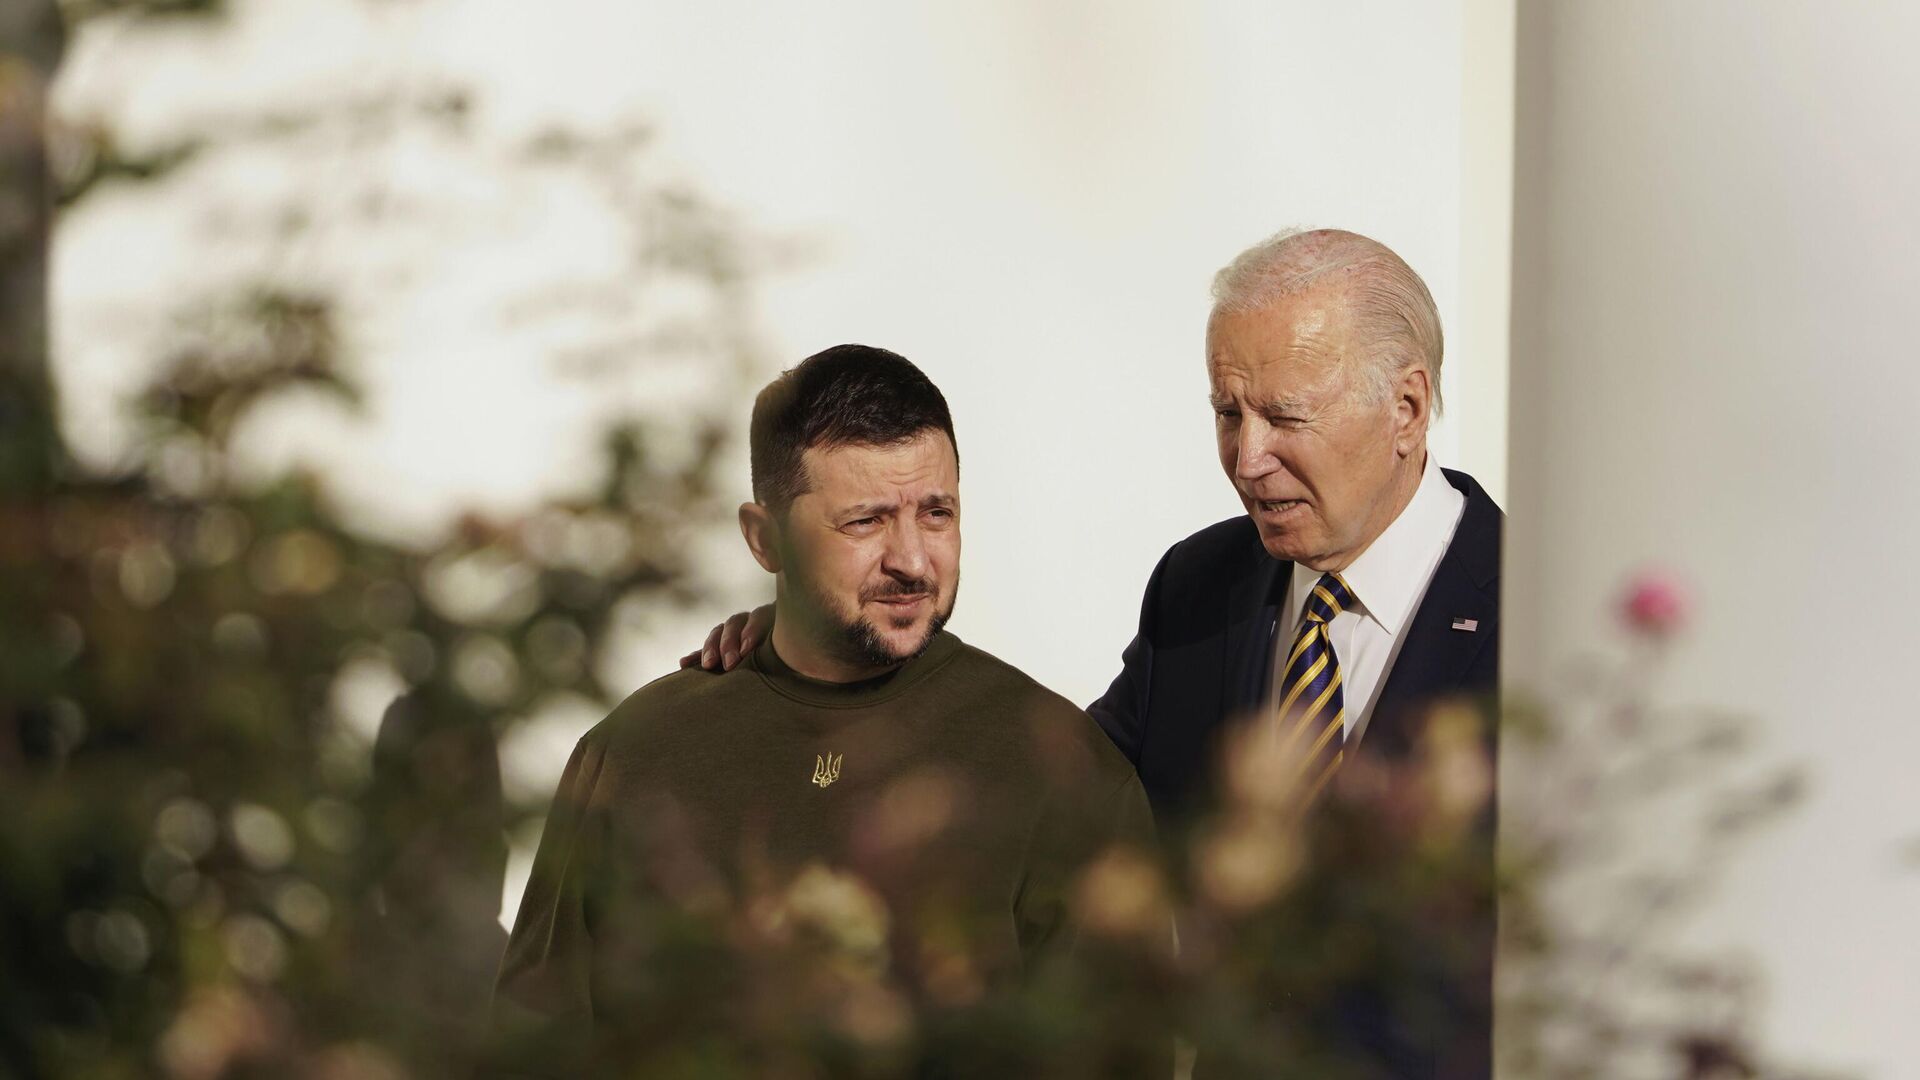 Президент США Джо Байден и президент Украины Владимир Зеленский во время встречи в Белом доме в Вашингтоне. 21 декабря 2022 года - ИноСМИ, 1920, 23.12.2022